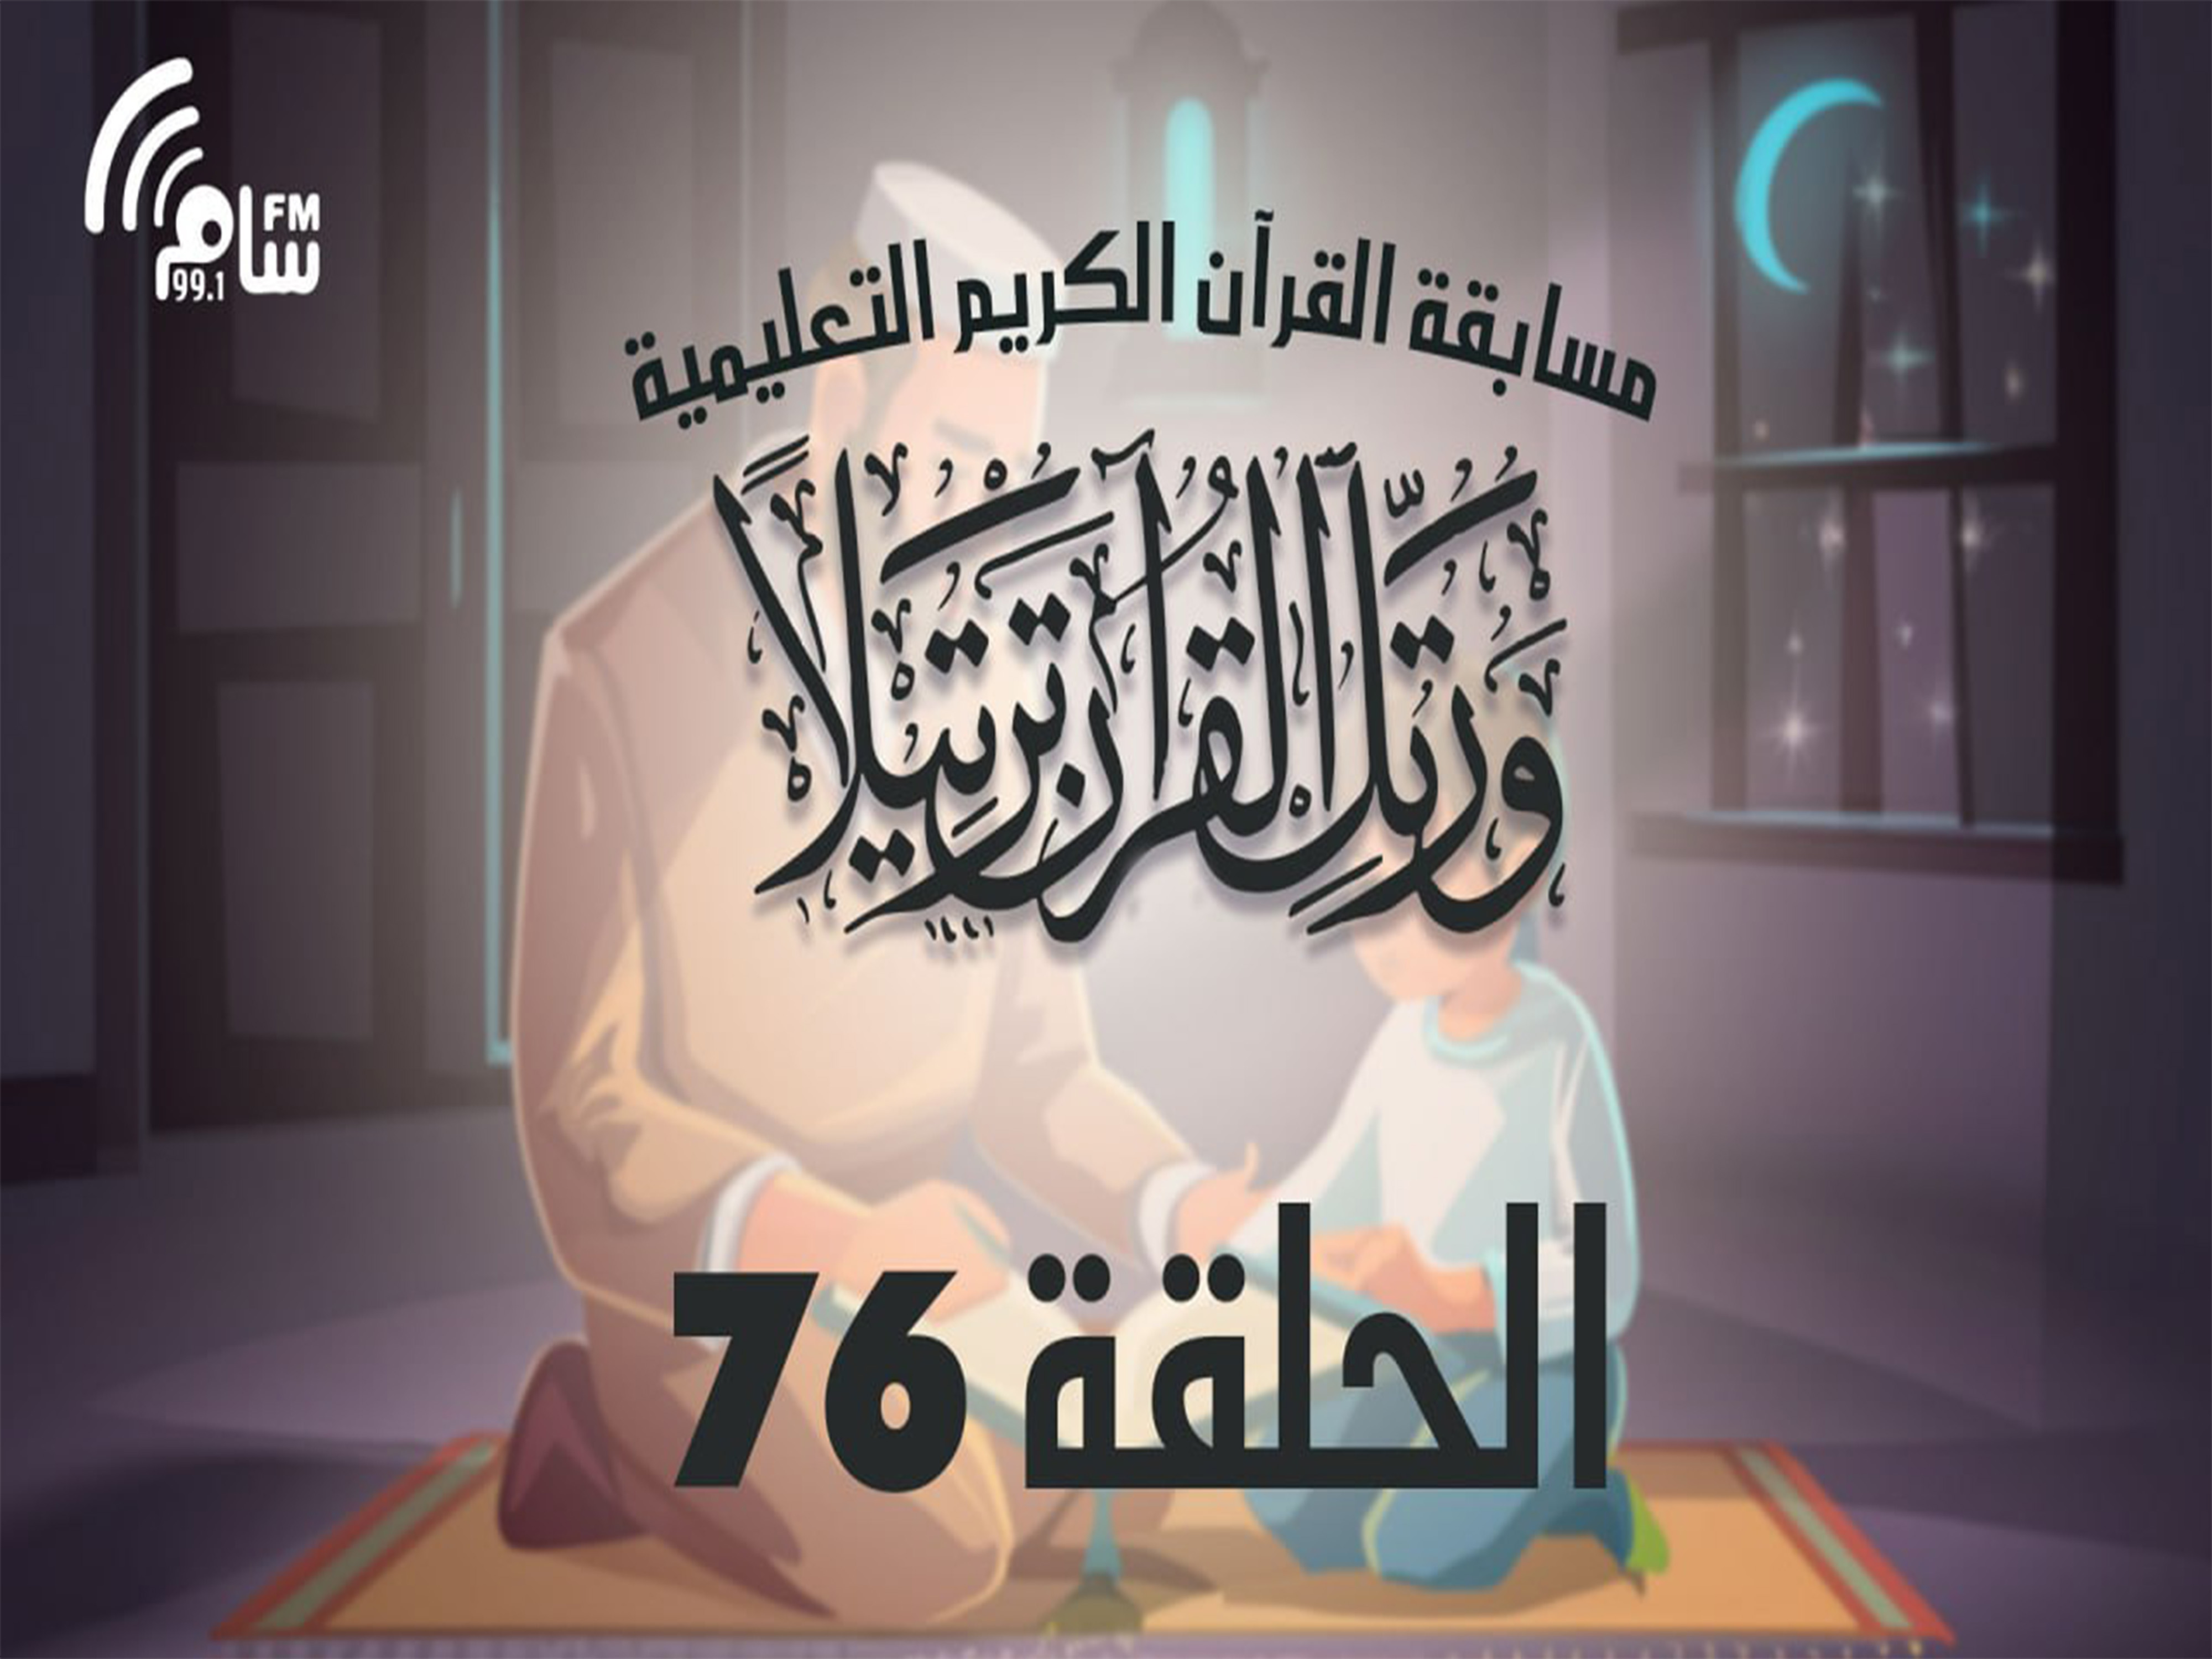 مسابقة القرآن الكريم الحلقة 76 انتاج اذاعة اسام اف ام